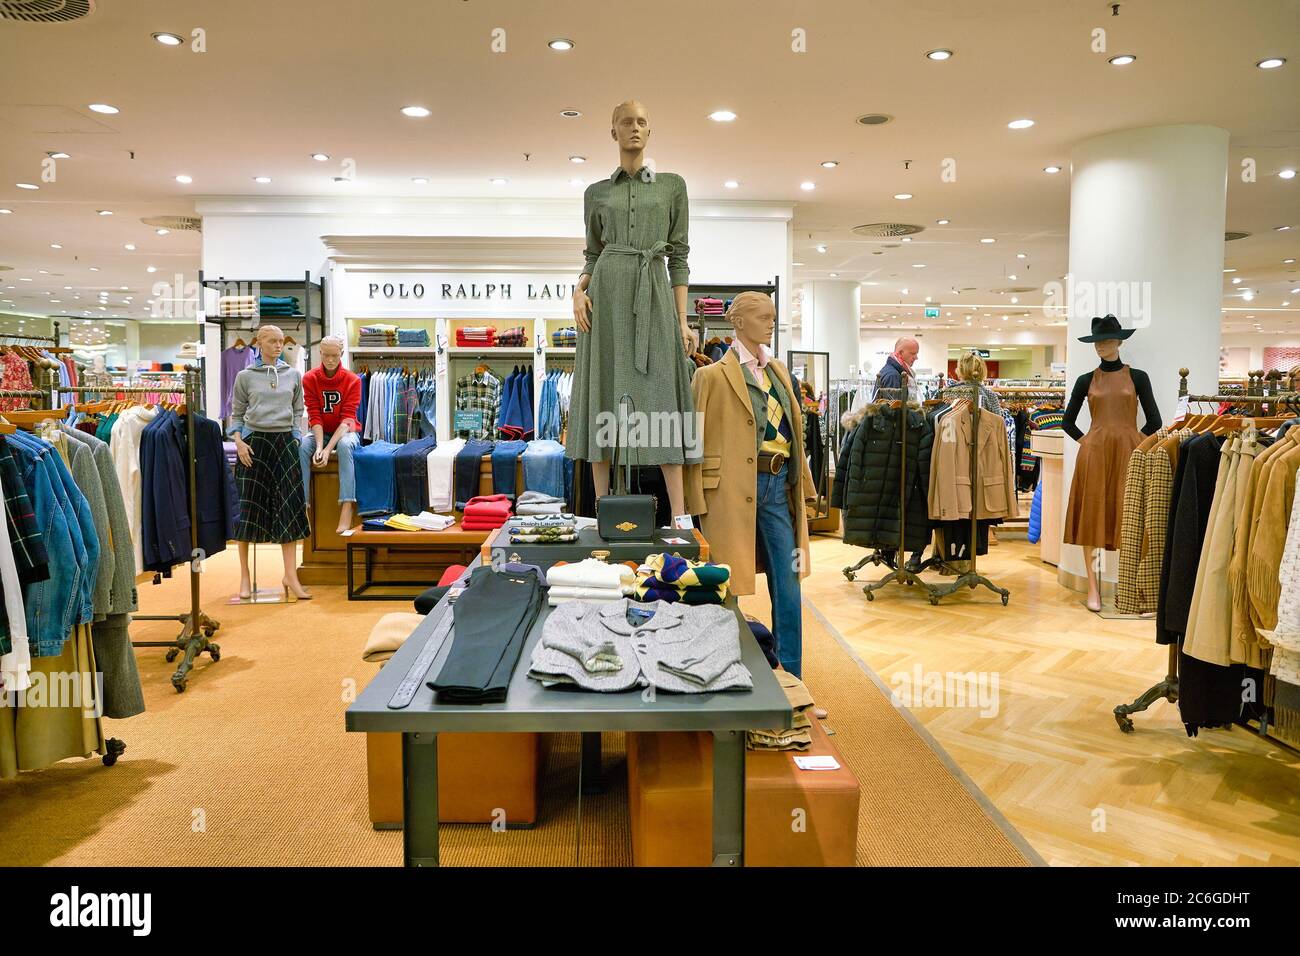 BERLIN, ALLEMAGNE - VERS SEPTEMBRE 2019 : vêtements Polo Ralph Lauren  exposés au grand magasin Kaufhaus des Westens (KaDeWe) à Berlin Photo Stock  - Alamy